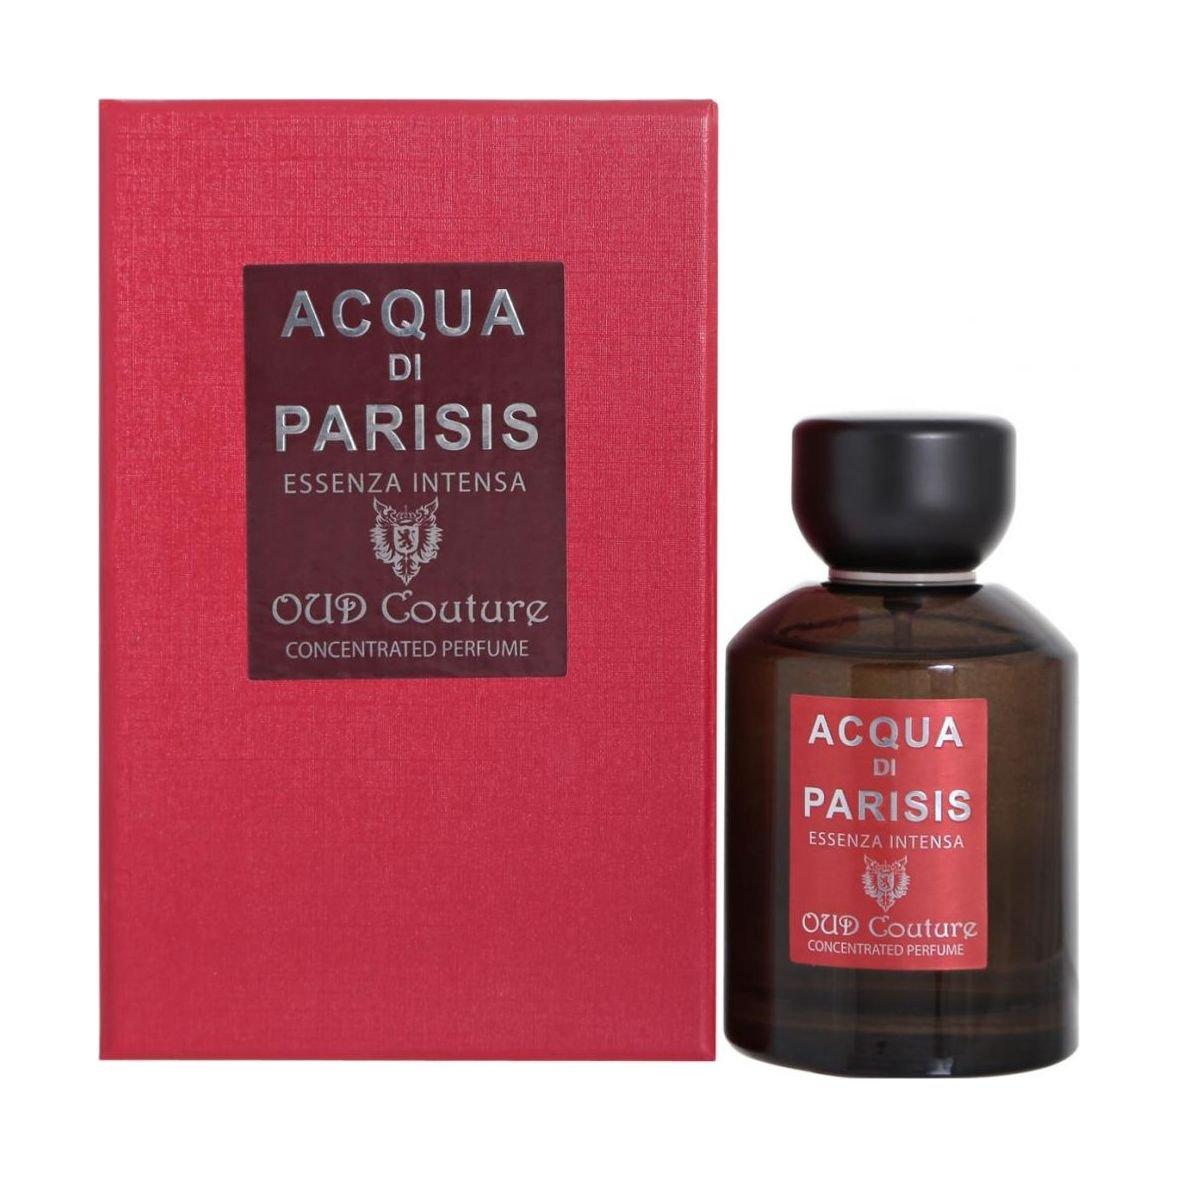 Buy Acqua di parisis oud couture 100ml perfume for men & women in Kuwait